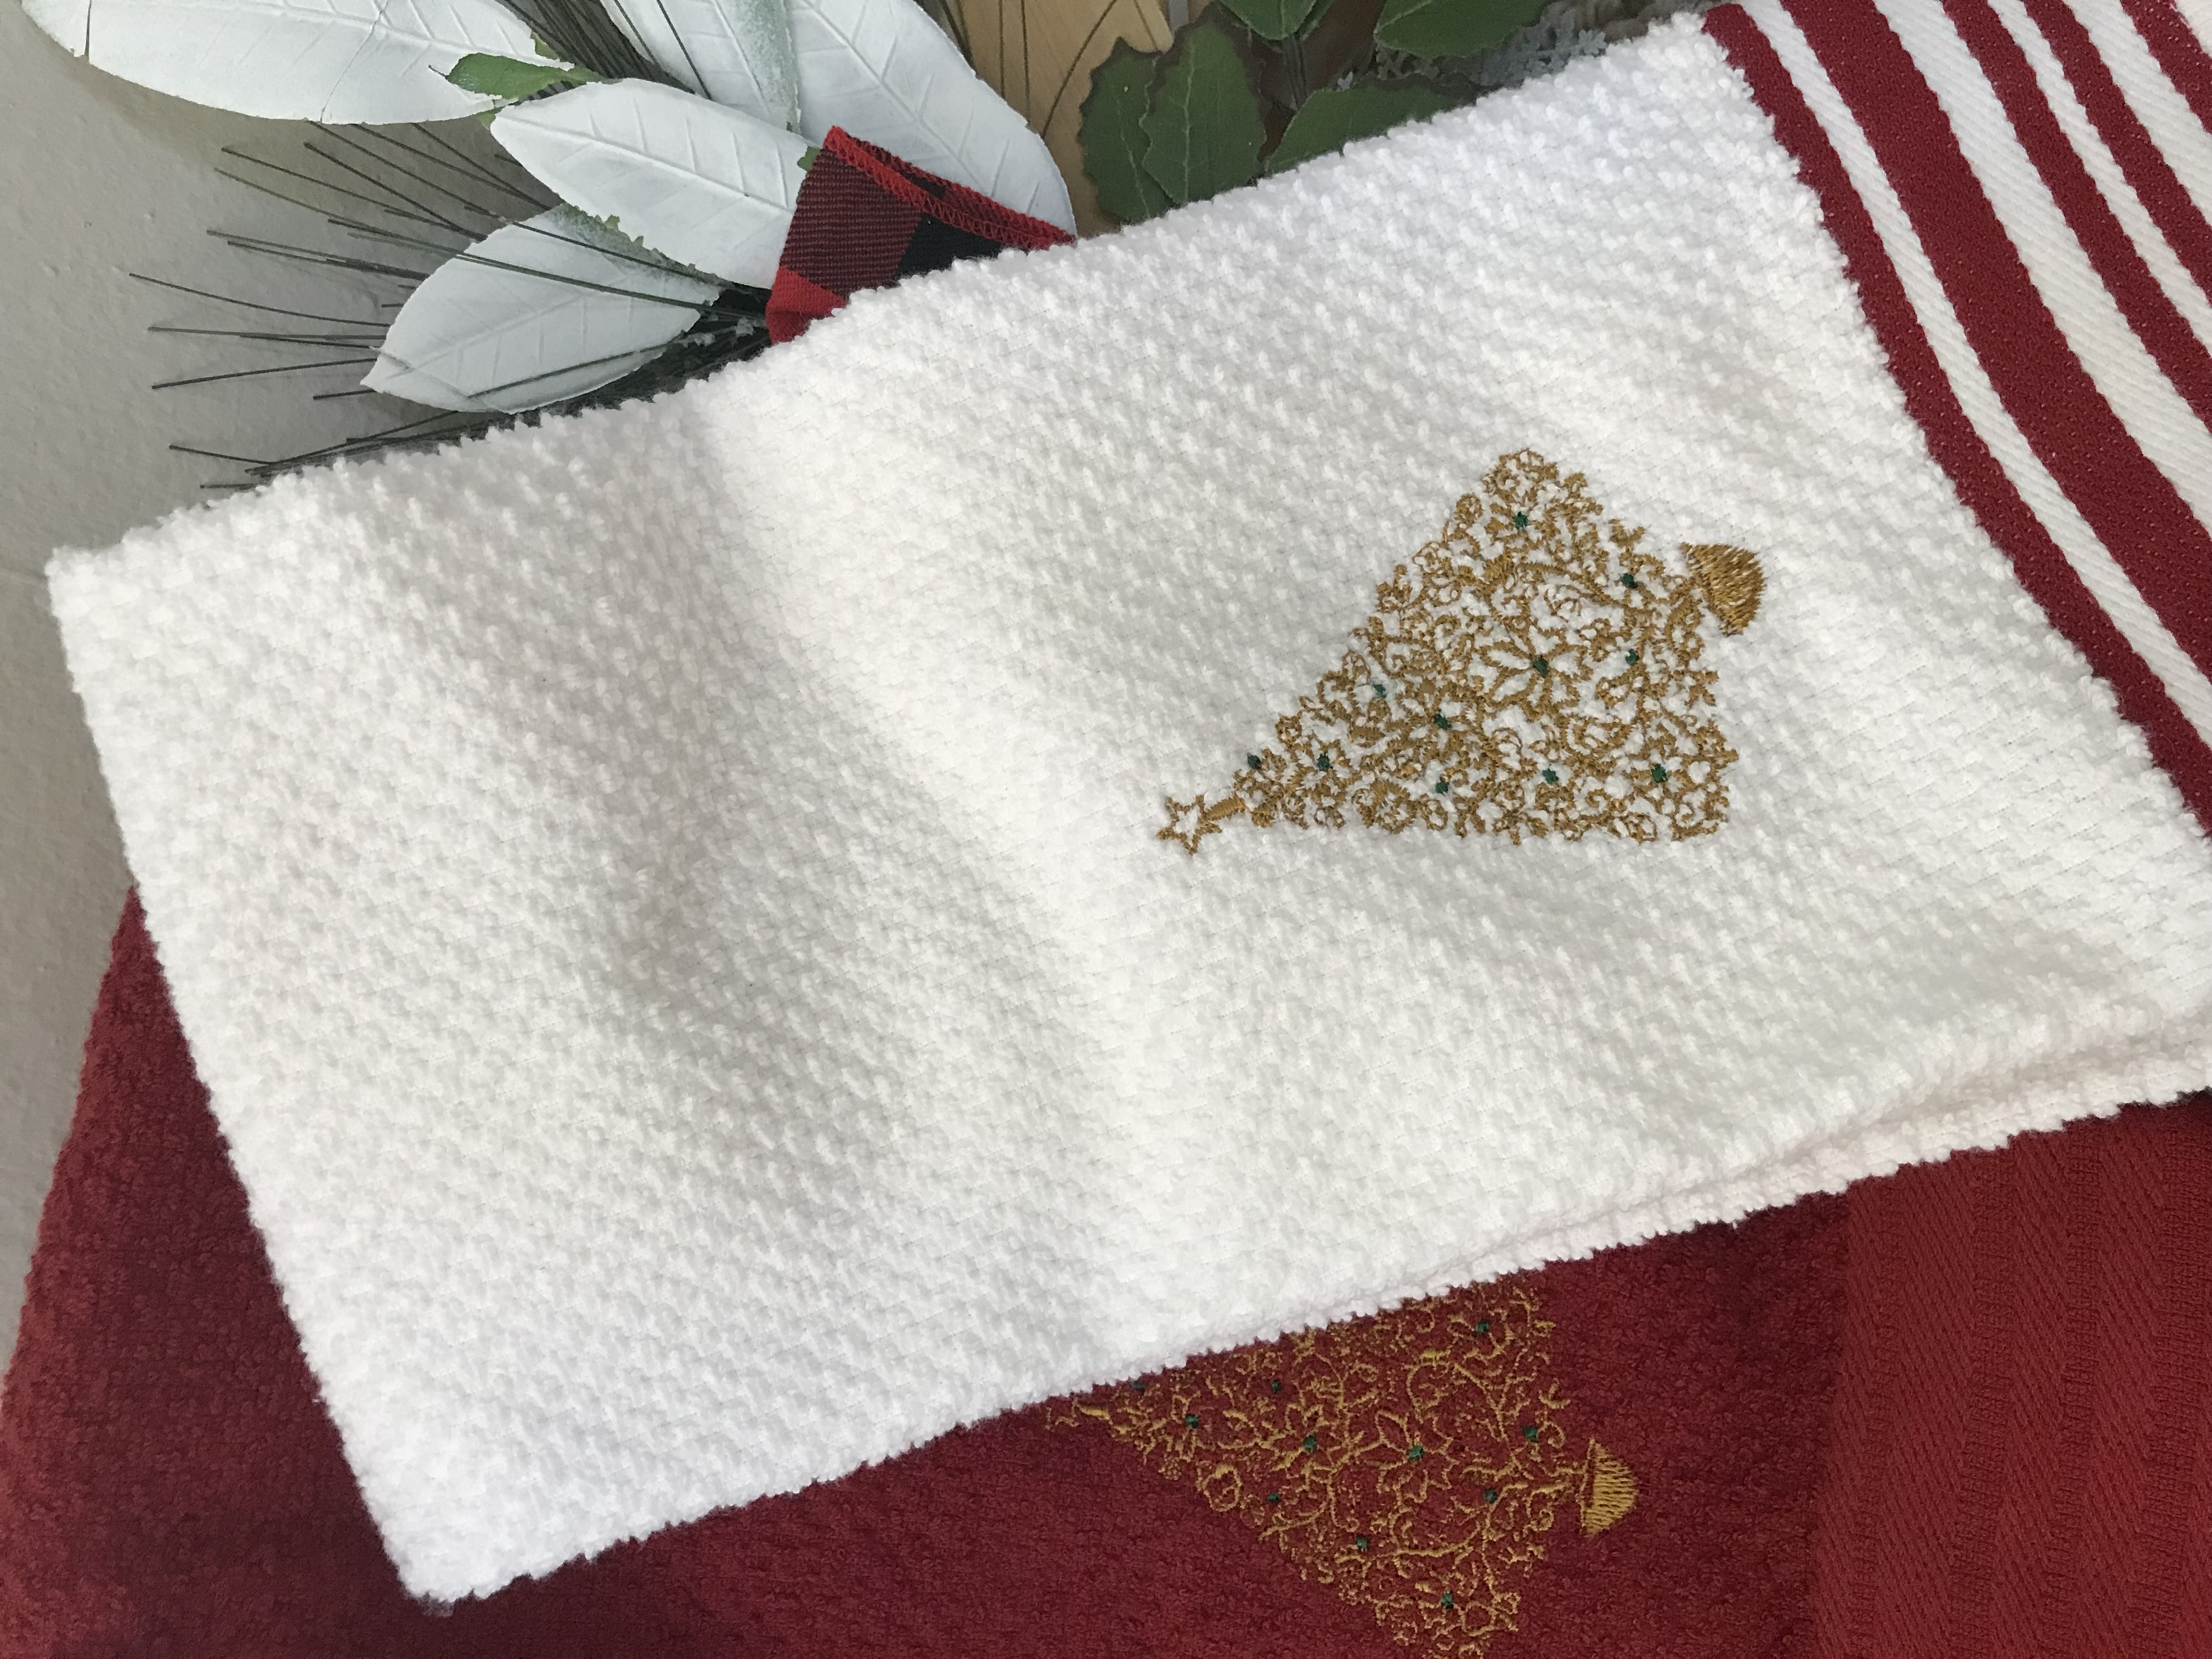 New     Embroidered Christmas Dishcloth Towel